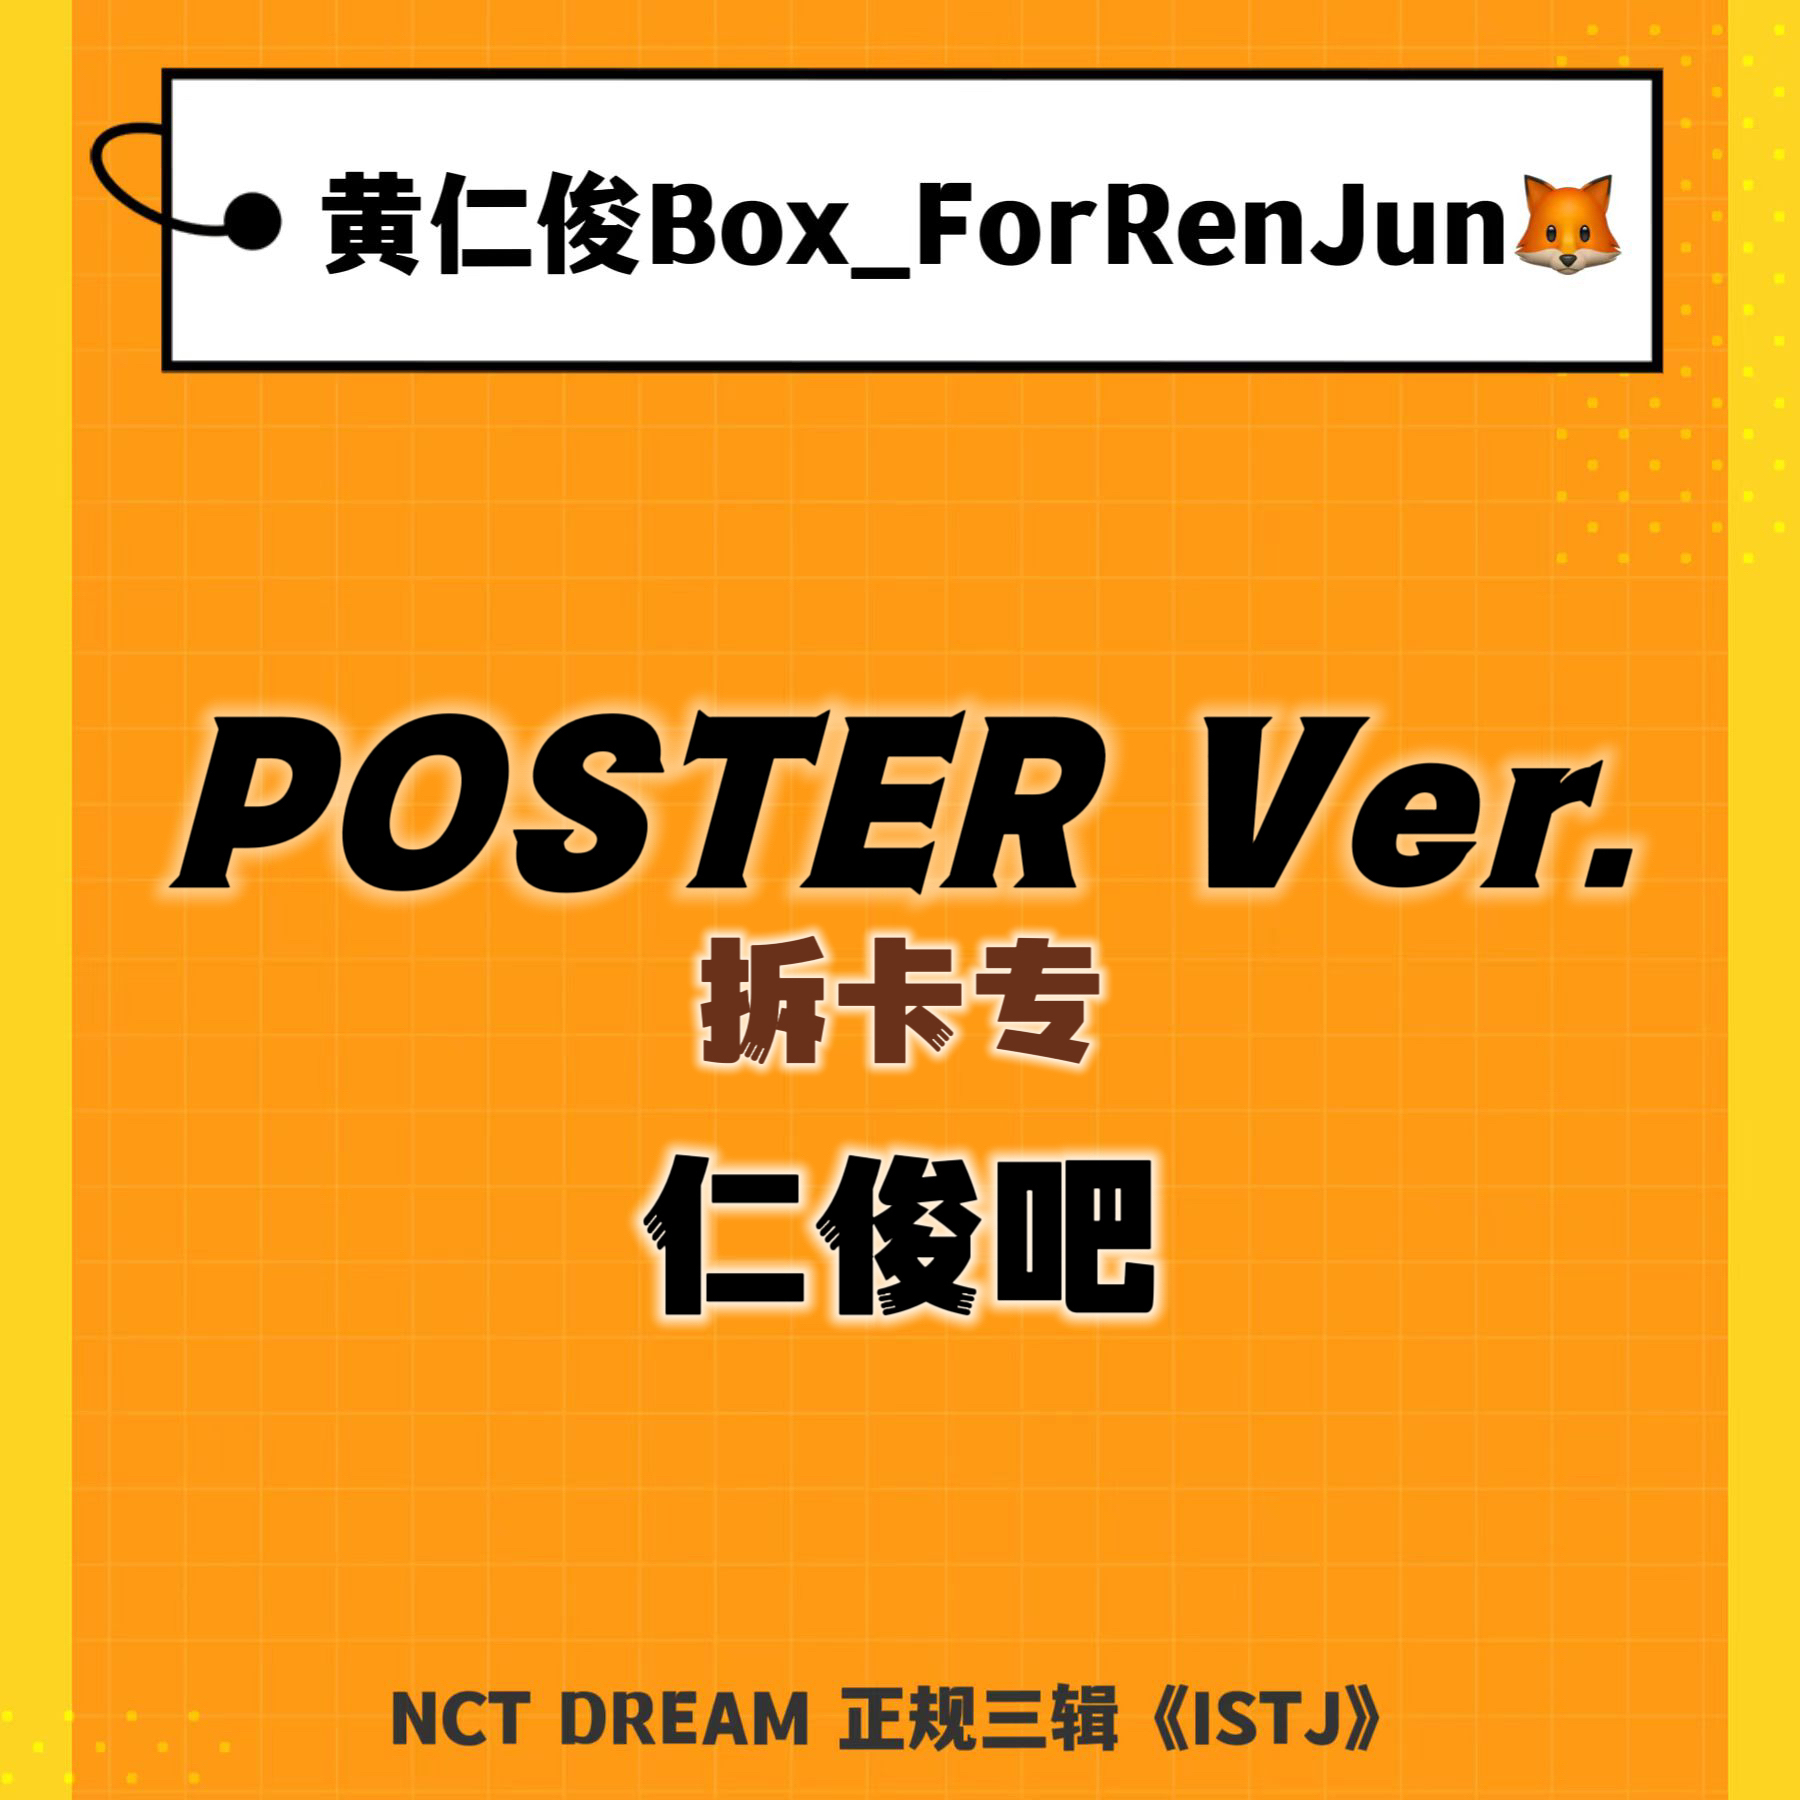 [拆卡专 (截止至7.23早7点)] [Ktown4u Special Gift] NCT DREAM - 正规3辑 [ISTJ] (Poster Ver.) (随机版本)_黄仁俊吧RenJunBar